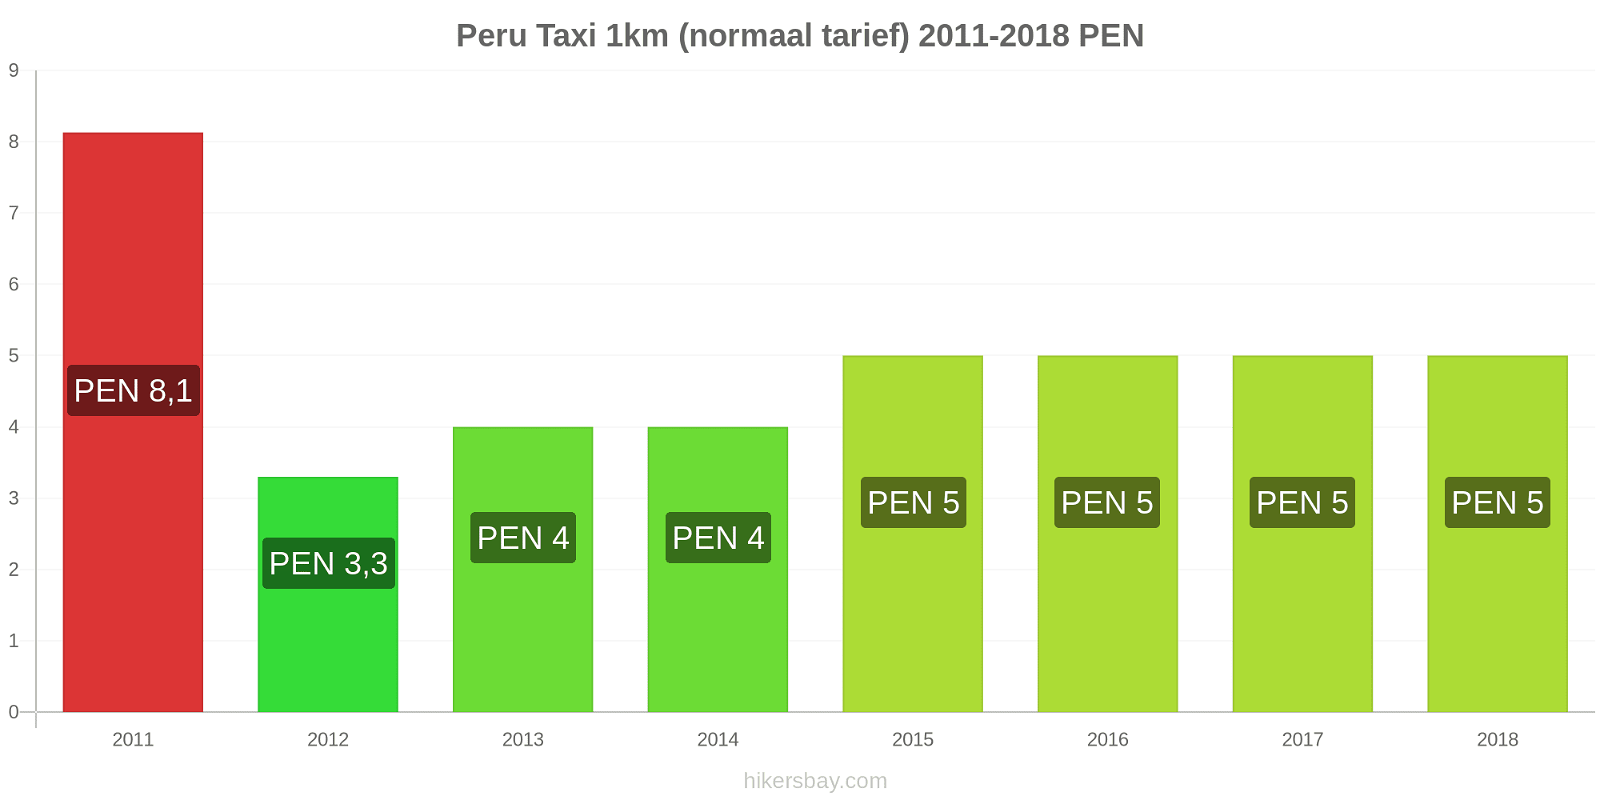 Peru prijswijzigingen Taxi 1km (normaal tarief) hikersbay.com